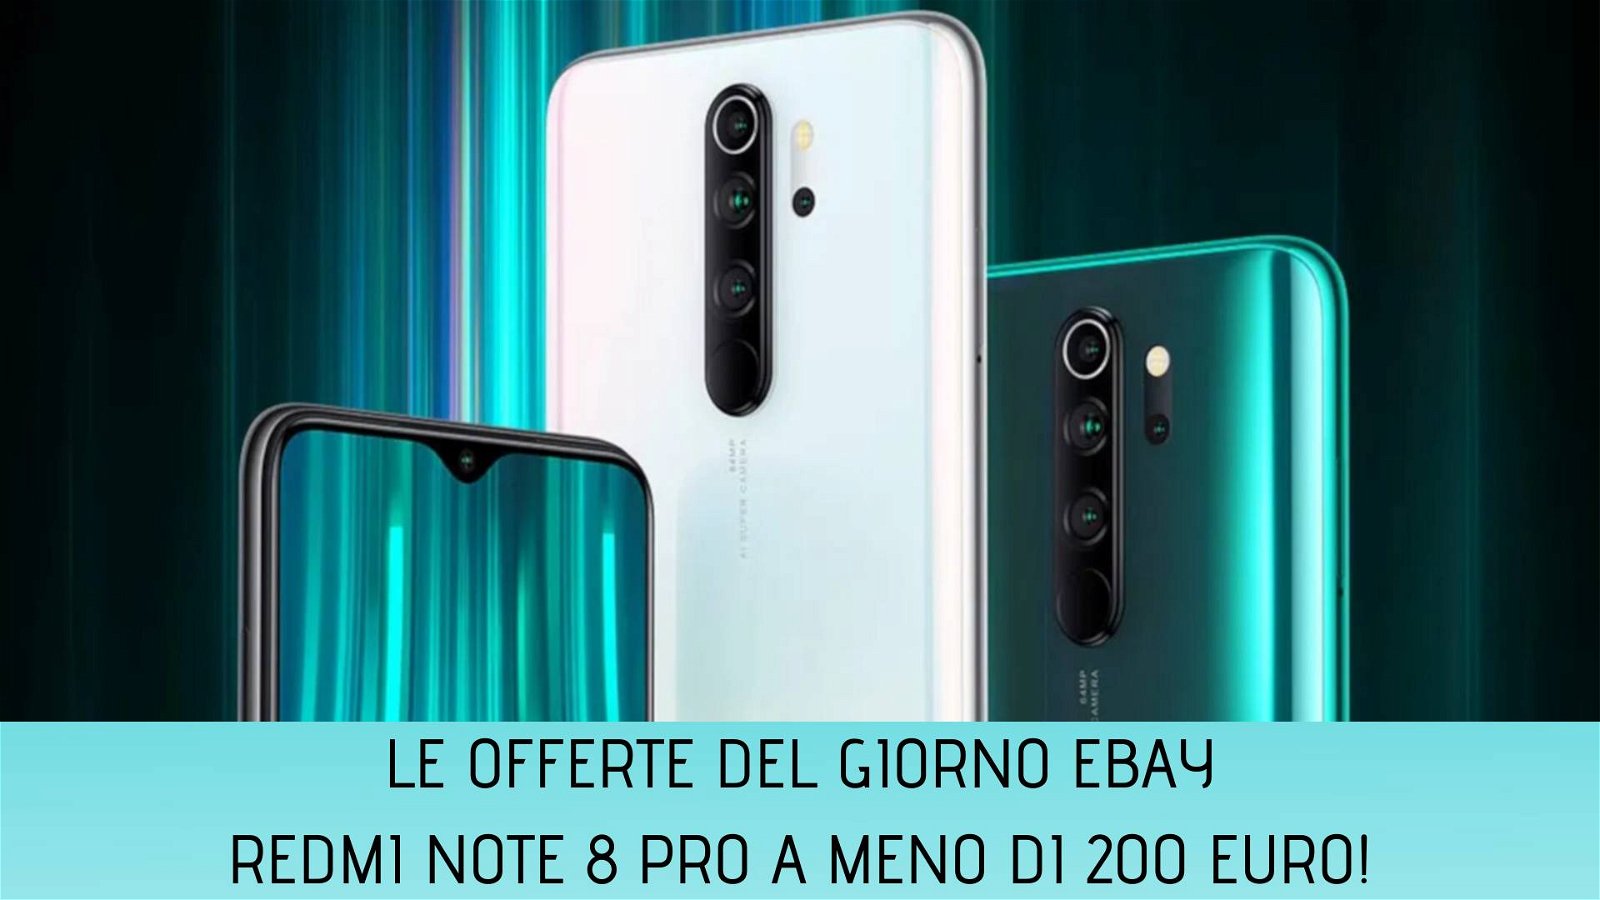 Immagine di Offerte del giorno eBay: Redmi Note 8 Pro a meno di 200 euro!